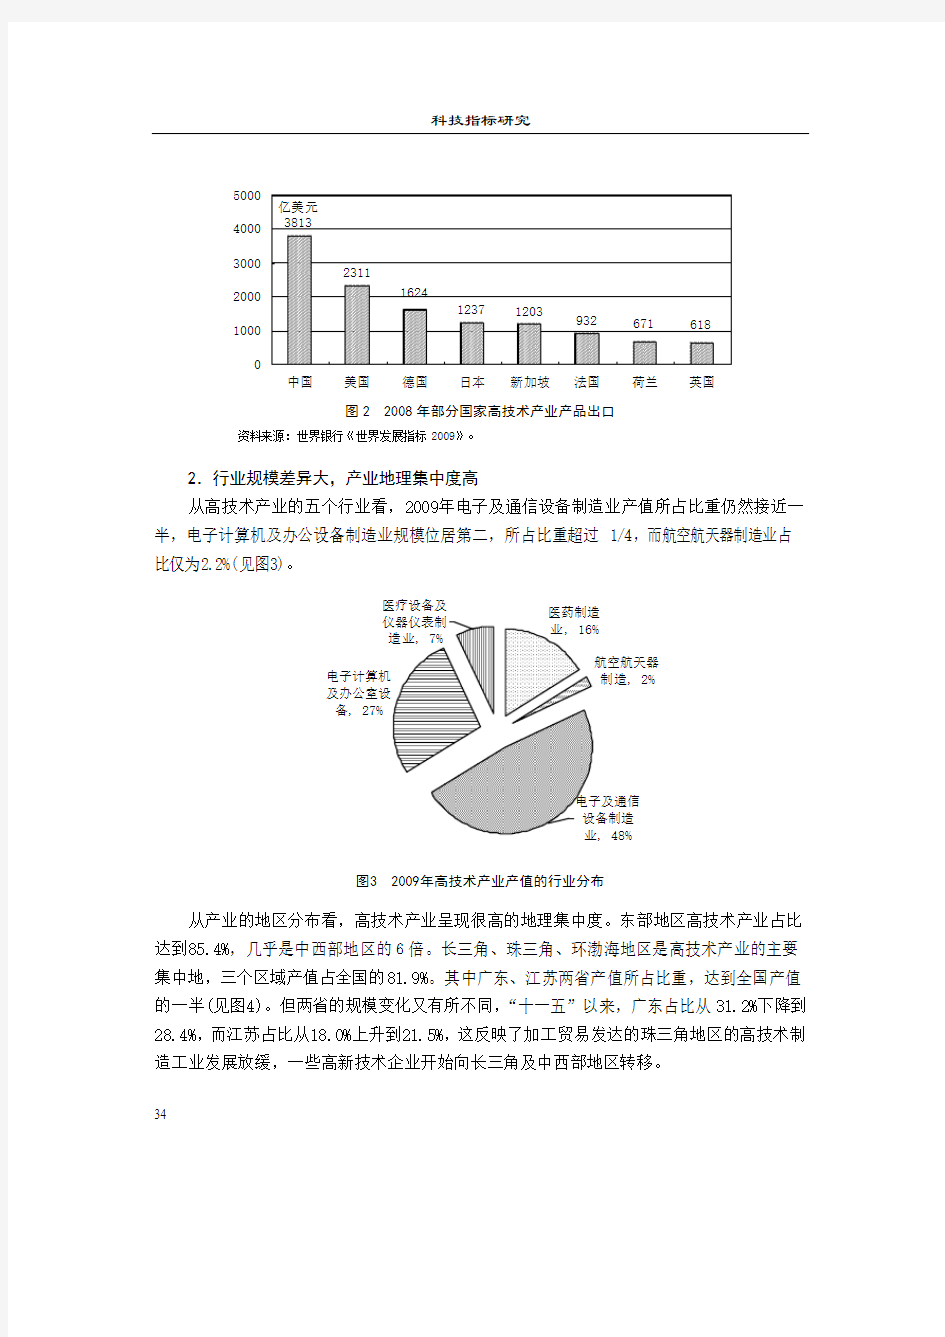 我国高技术产业发展的现状与建议-中国科技统计